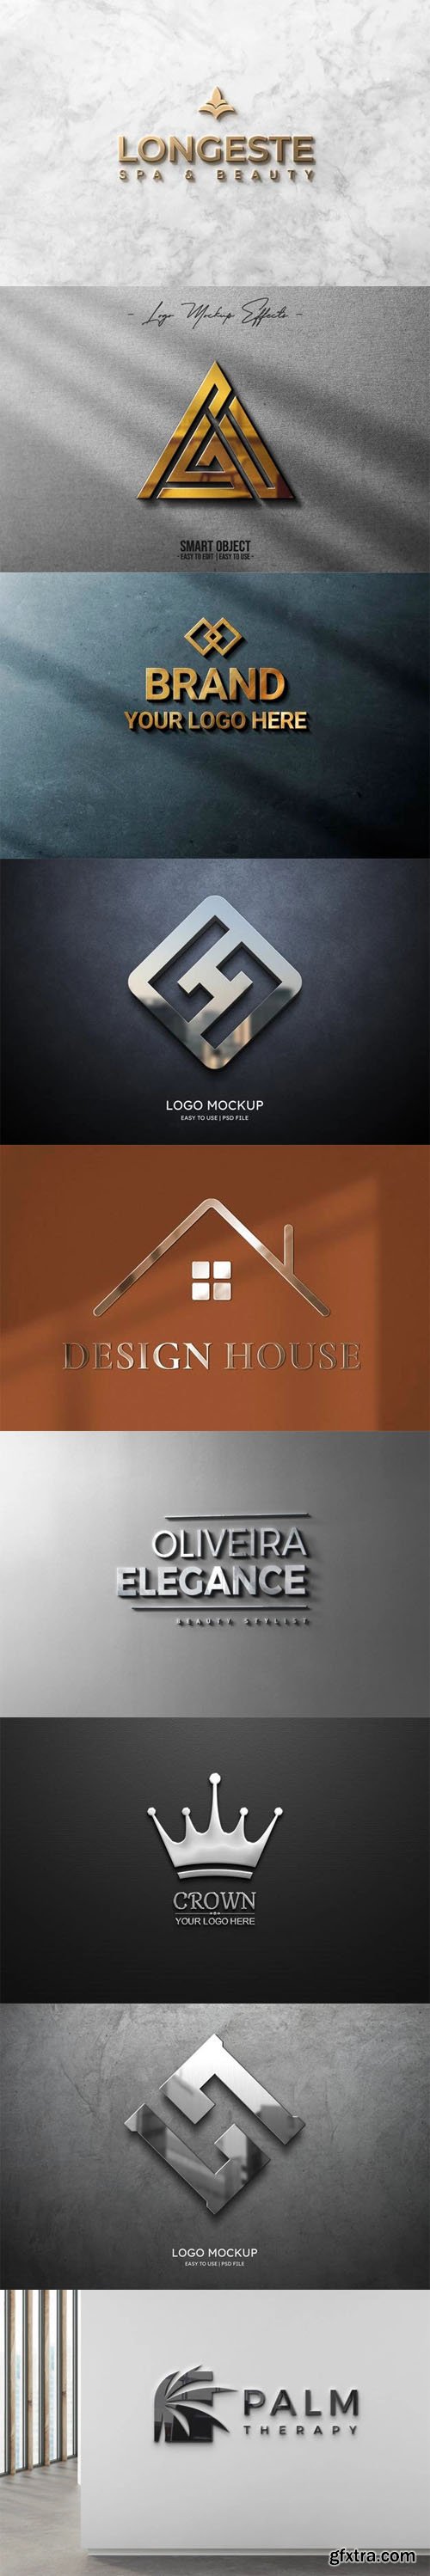 3D Logos PSD Mockups Templates Collection